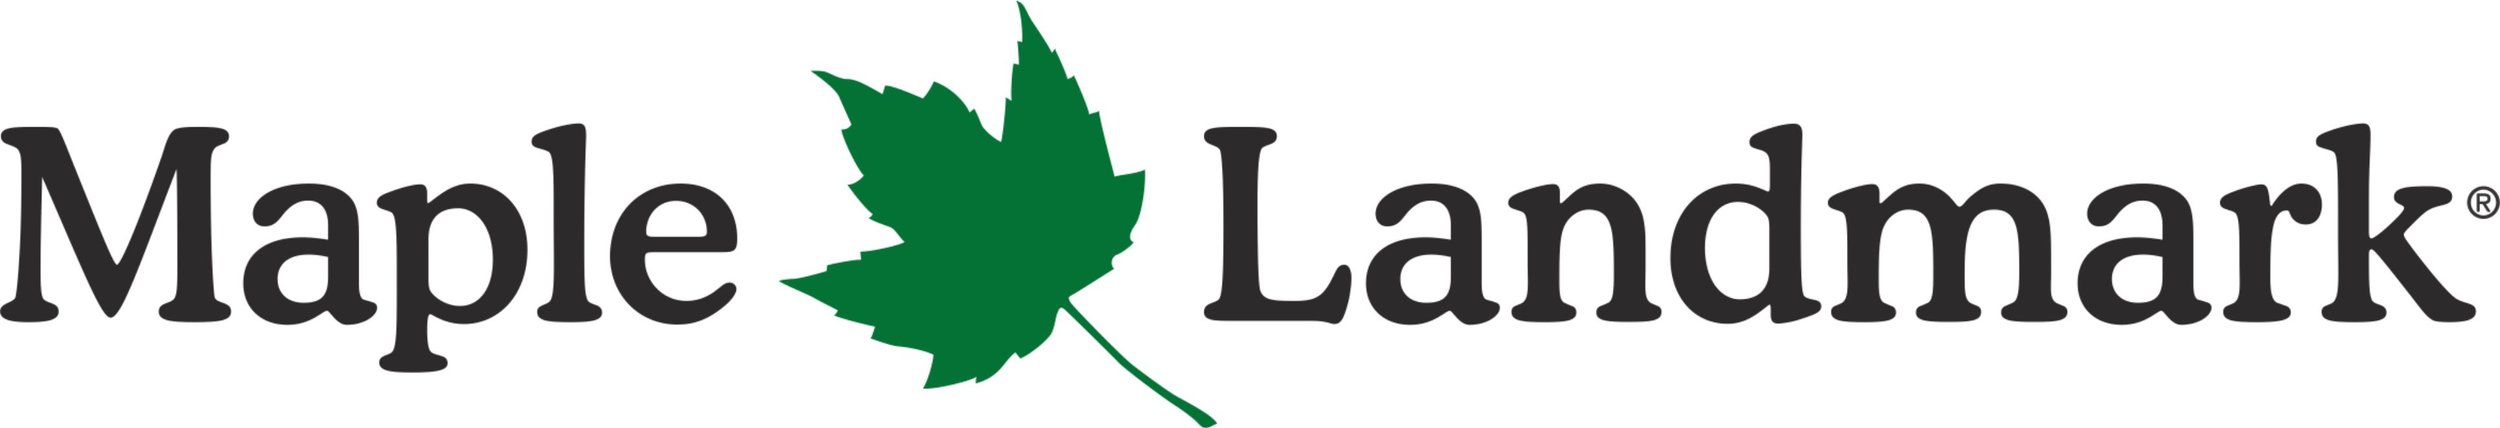 Logo - Maple Landmark.jpg